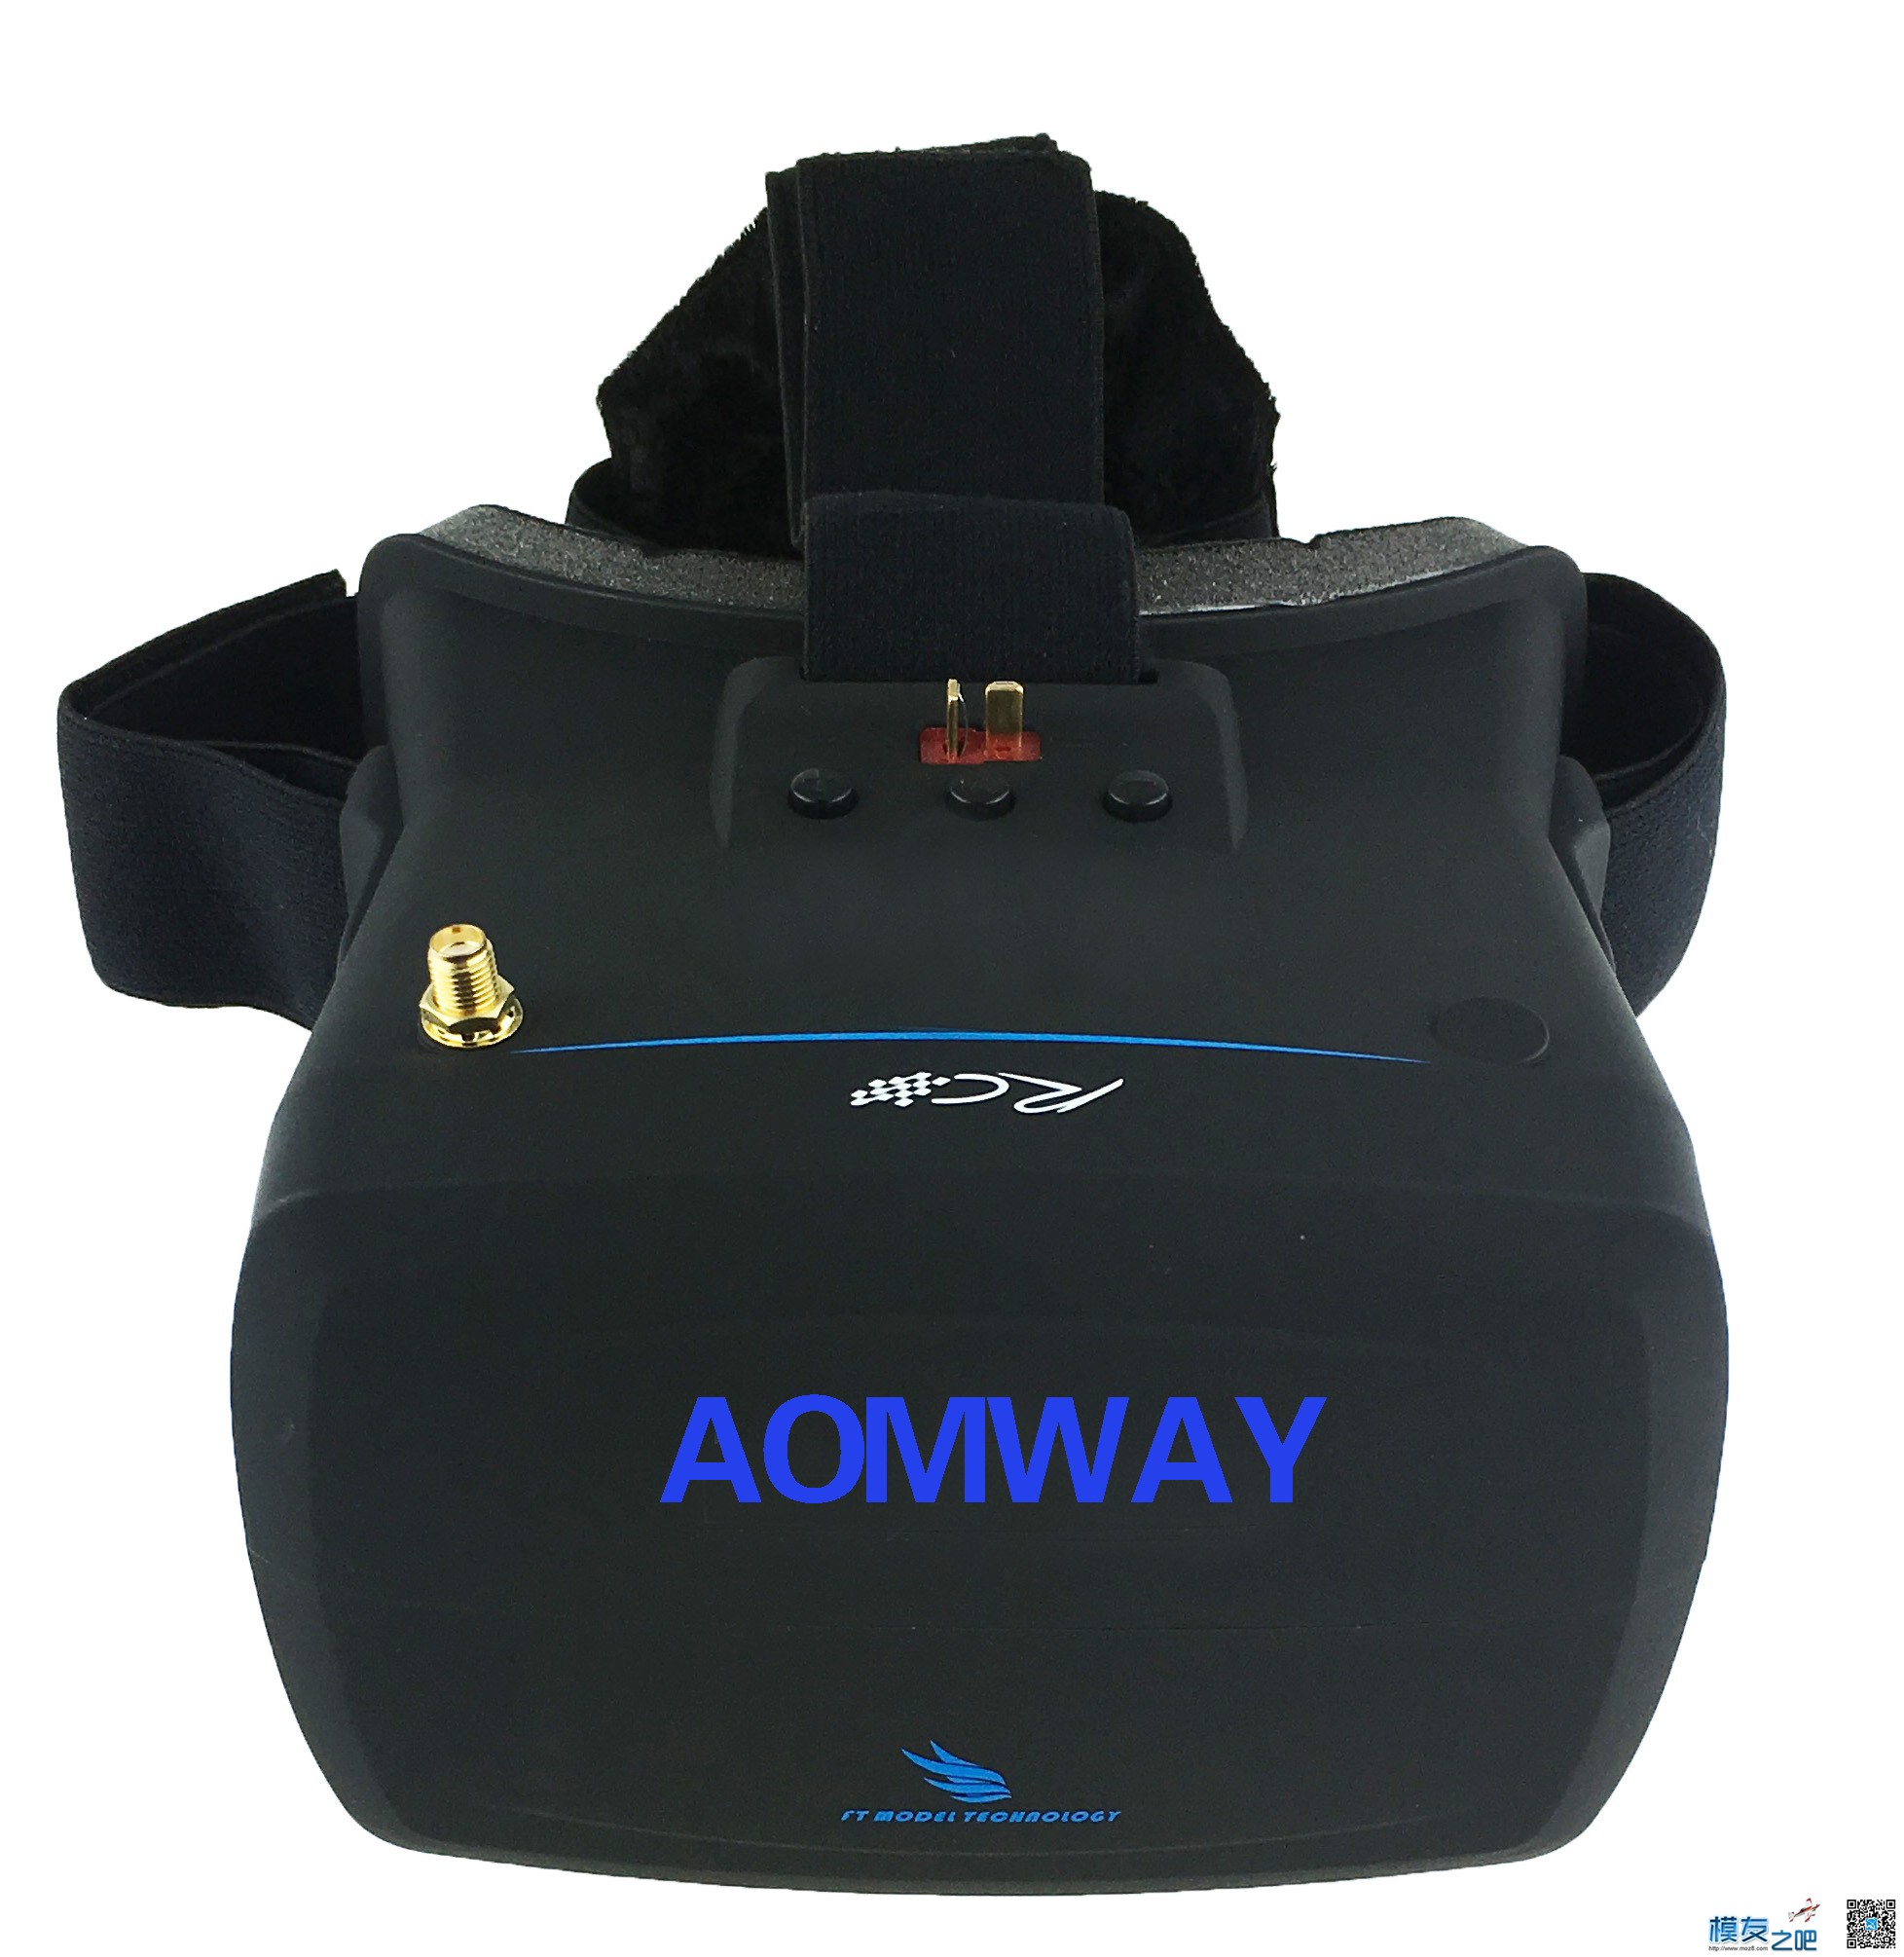 【模友之吧】AOMWAY VR Goggles V1 视频眼镜测试团购活动！ 电池,天线,图传,接收机,论坛活动 作者:飞天狼 3618 